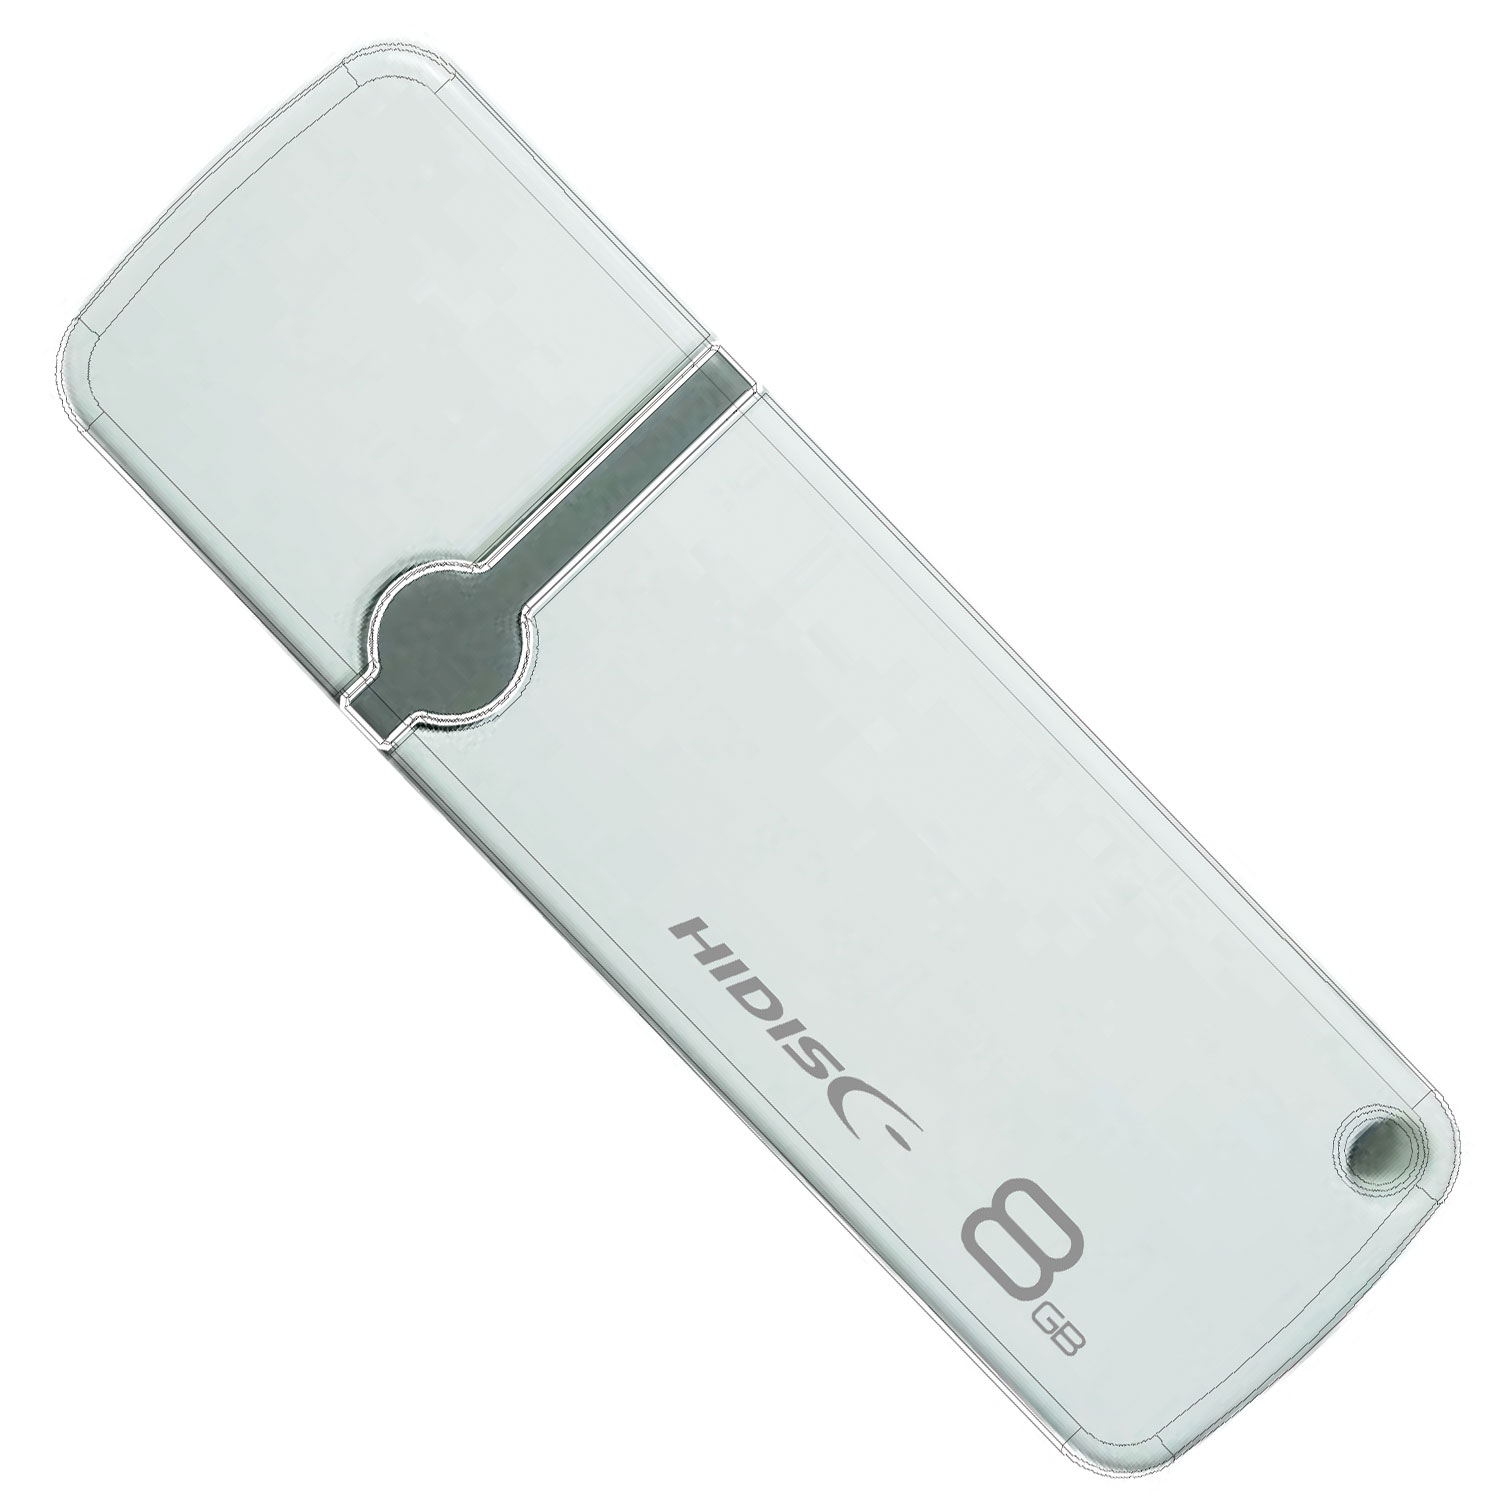 HIDISC USB 2.0 フラッシュドライブ 8GB 白 キャップ式 HDUF122C8G2